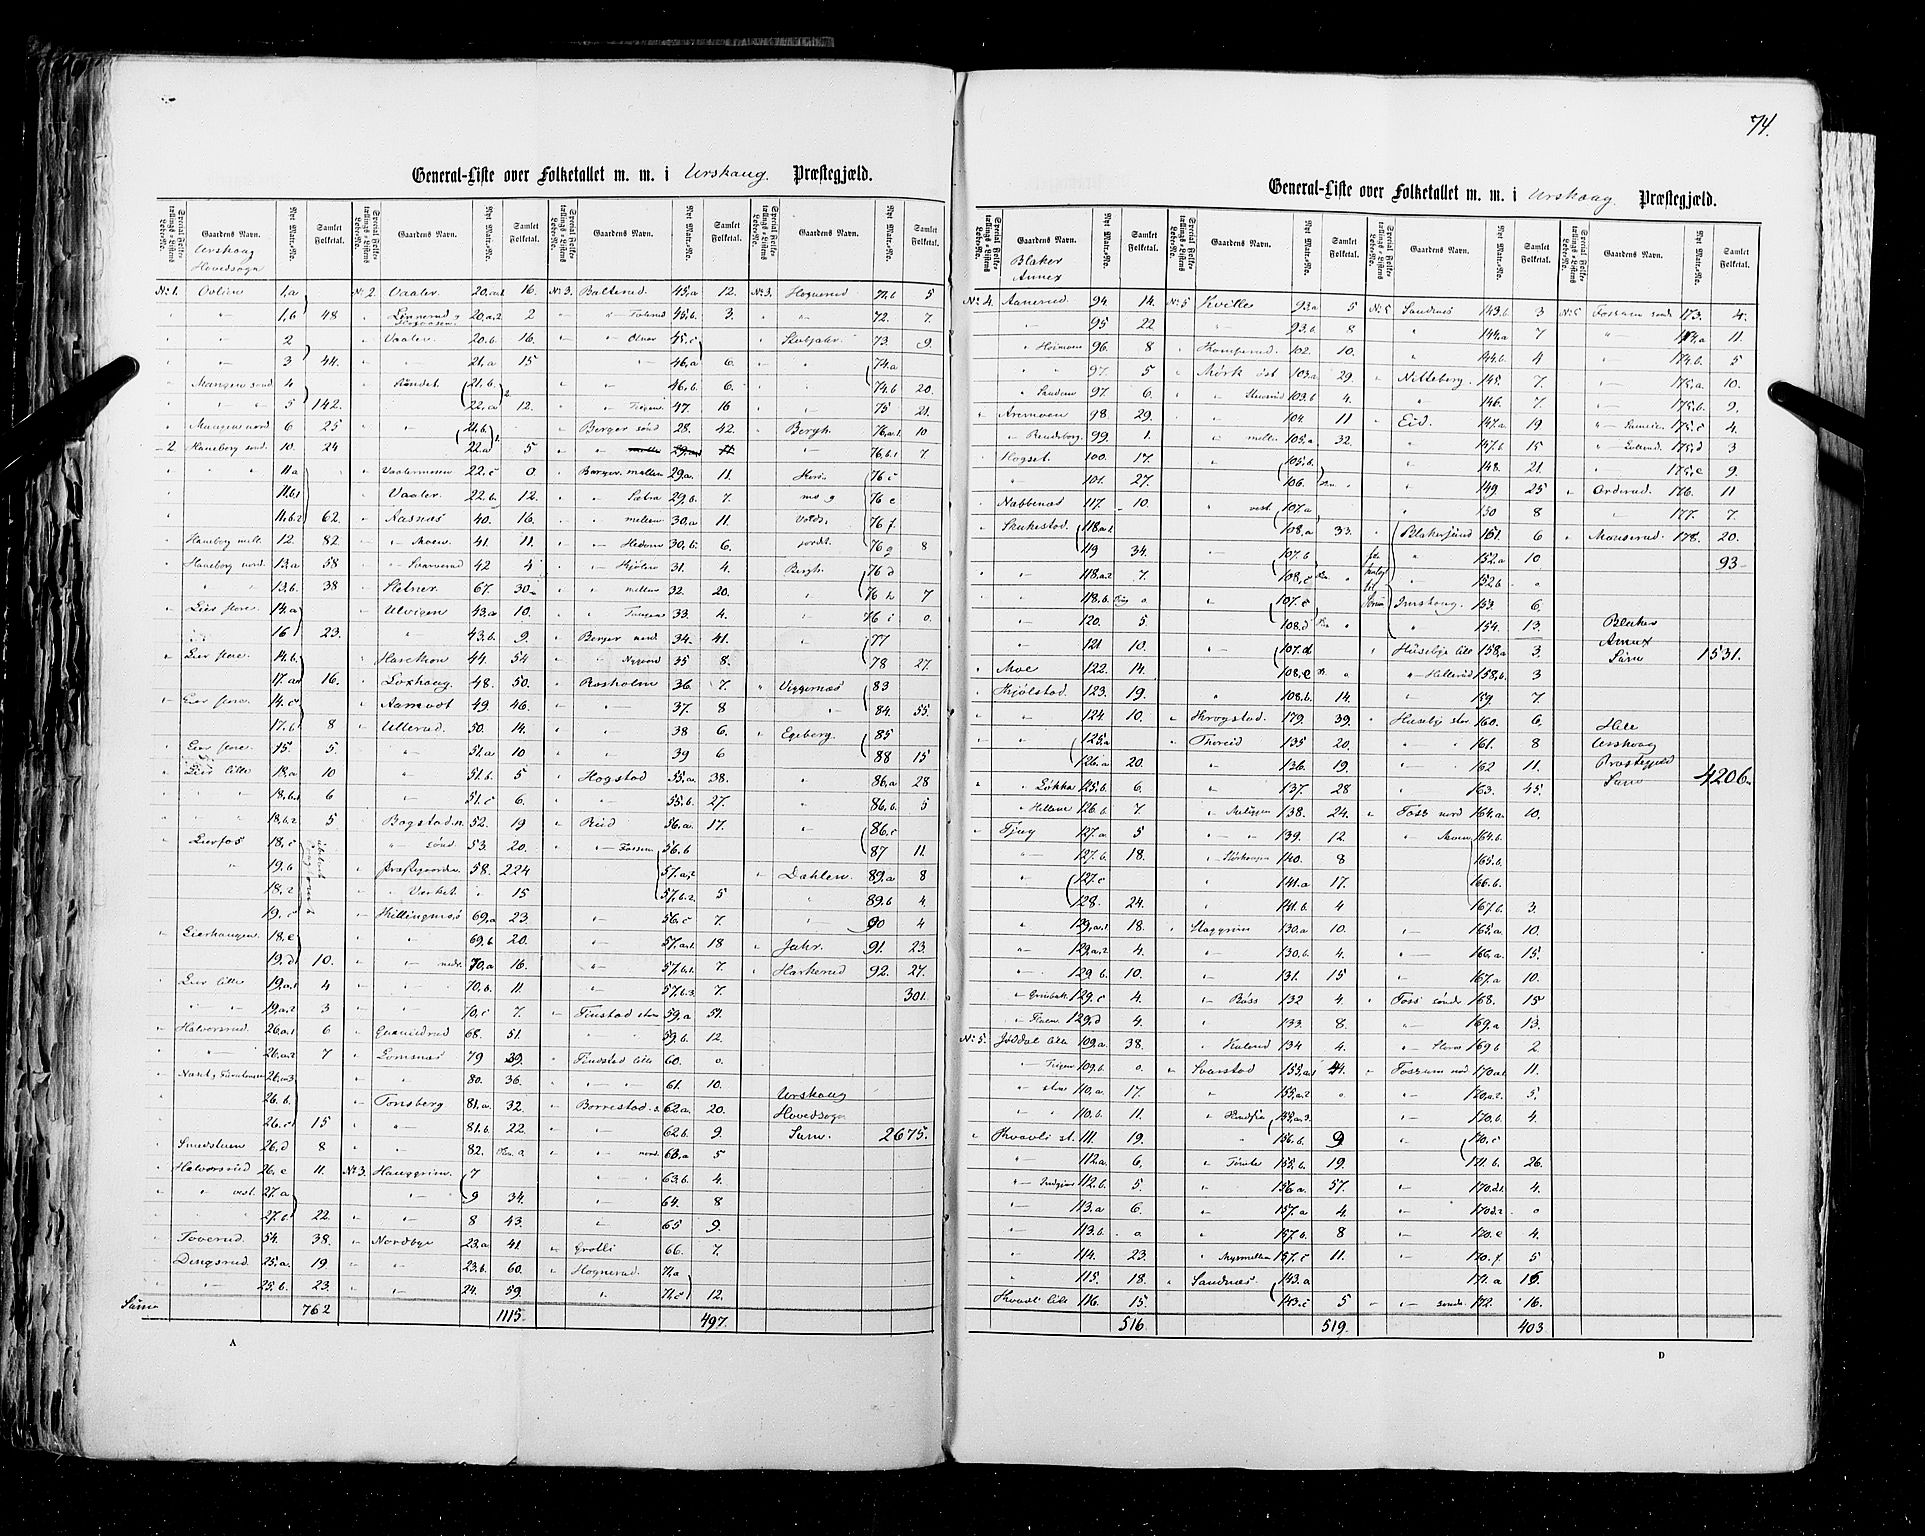 RA, Census 1855, vol. 1: Akershus amt, Smålenenes amt og Hedemarken amt, 1855, p. 74